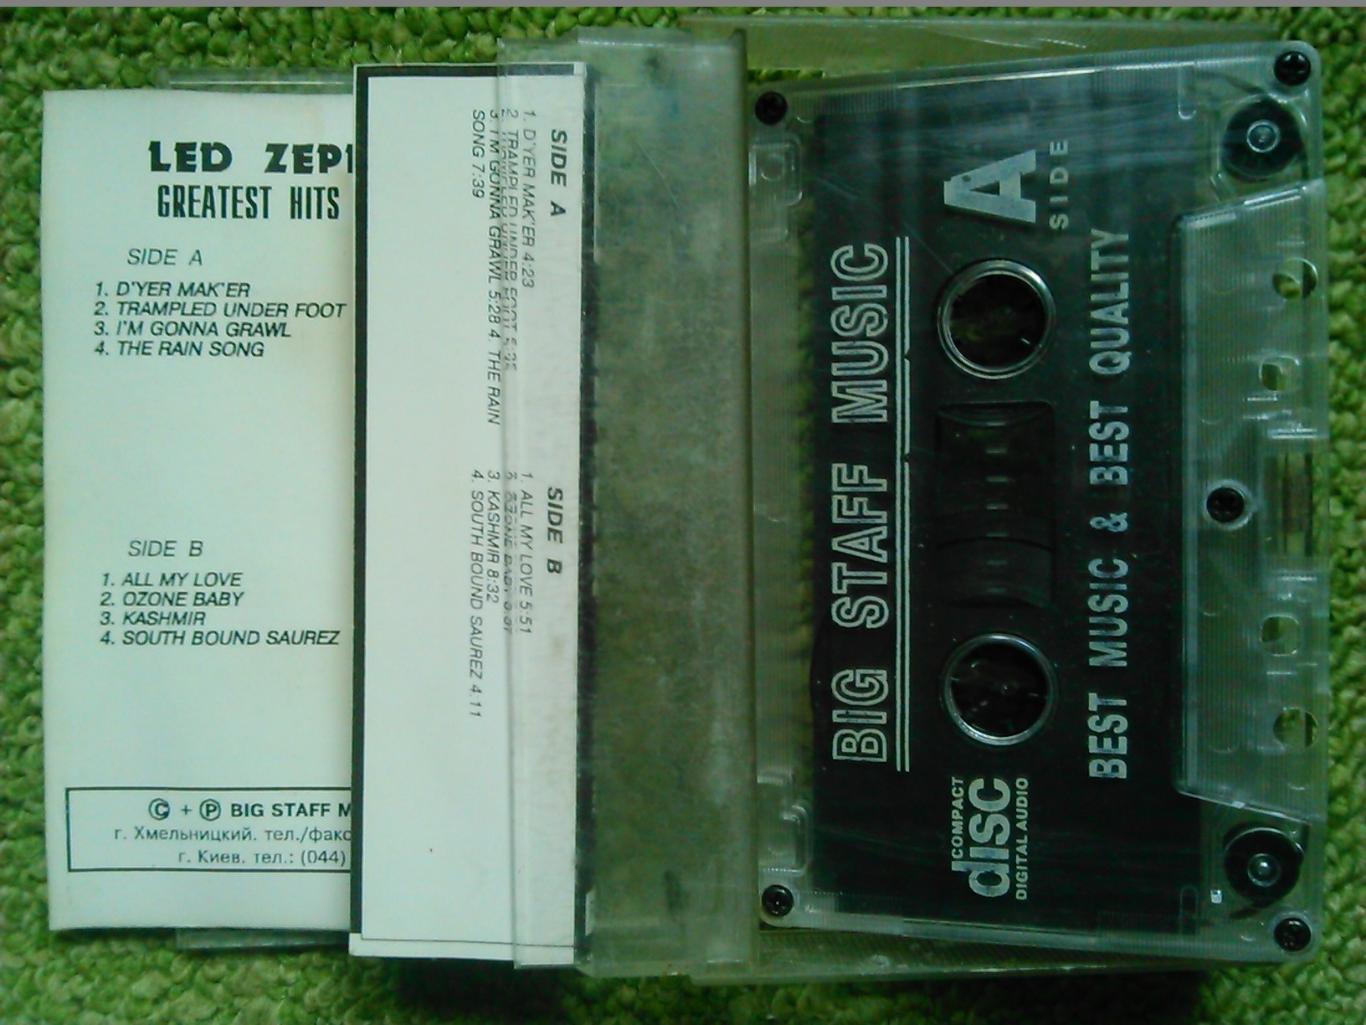 MC/аудиокассета LED ZEPPELIN/greatest hits 1973-1982. Оптом скидки до 46%! 1